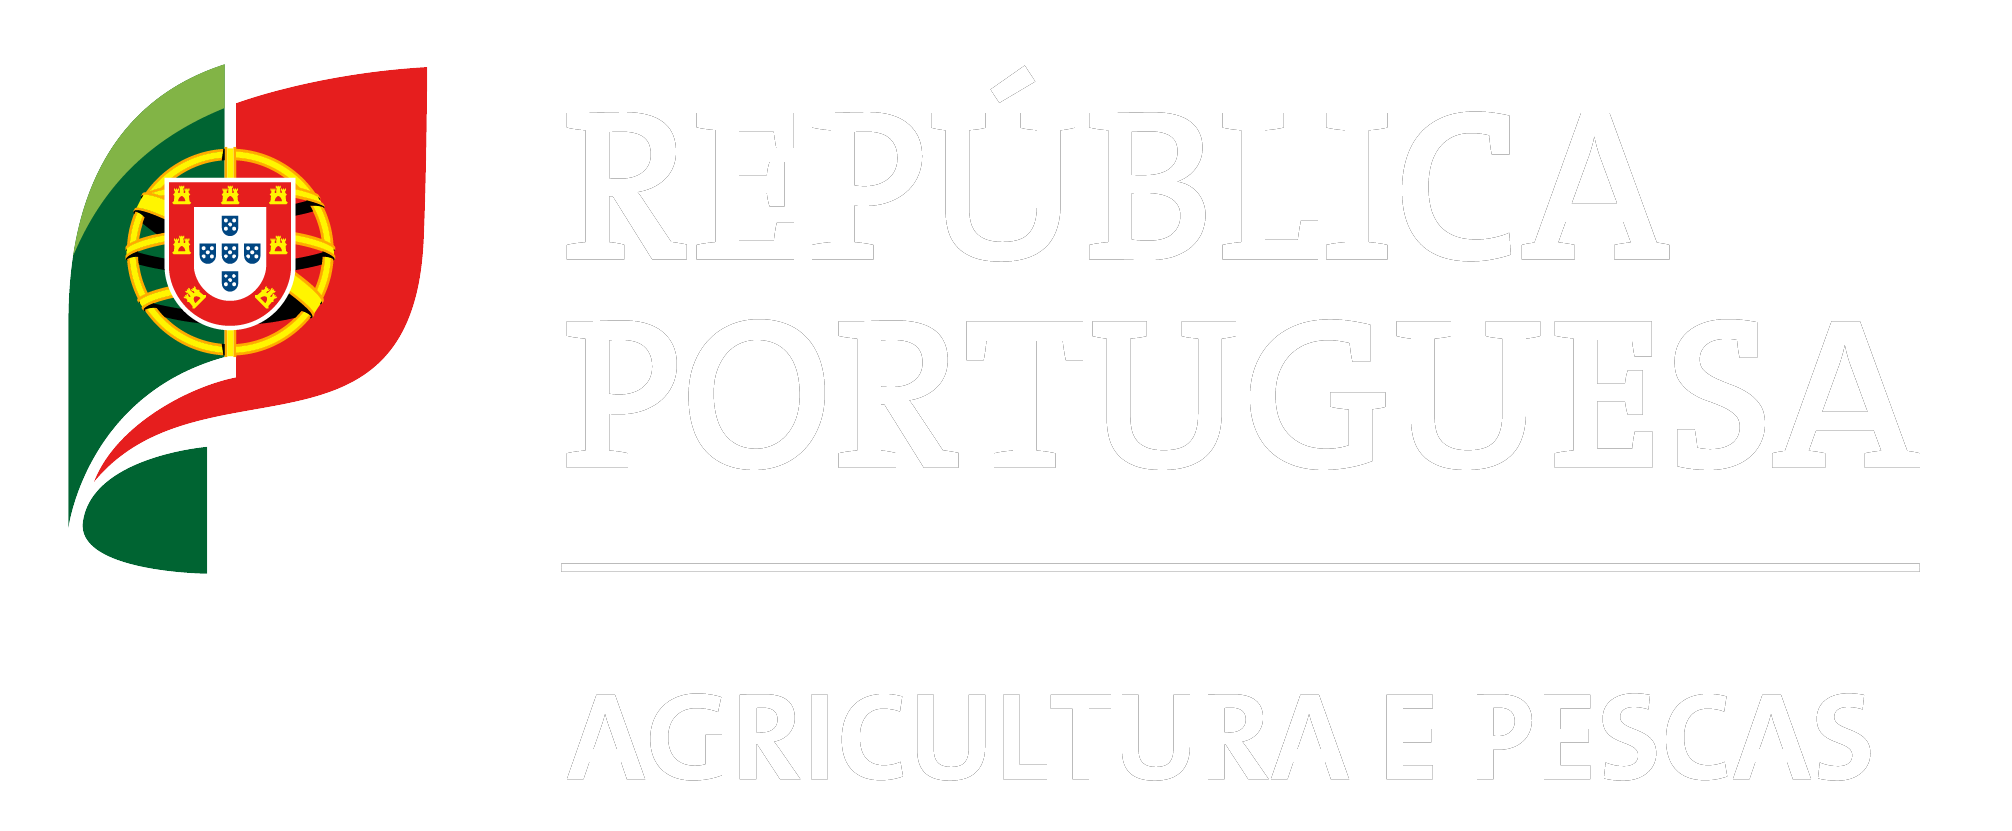 República Portuguesa Agricultura